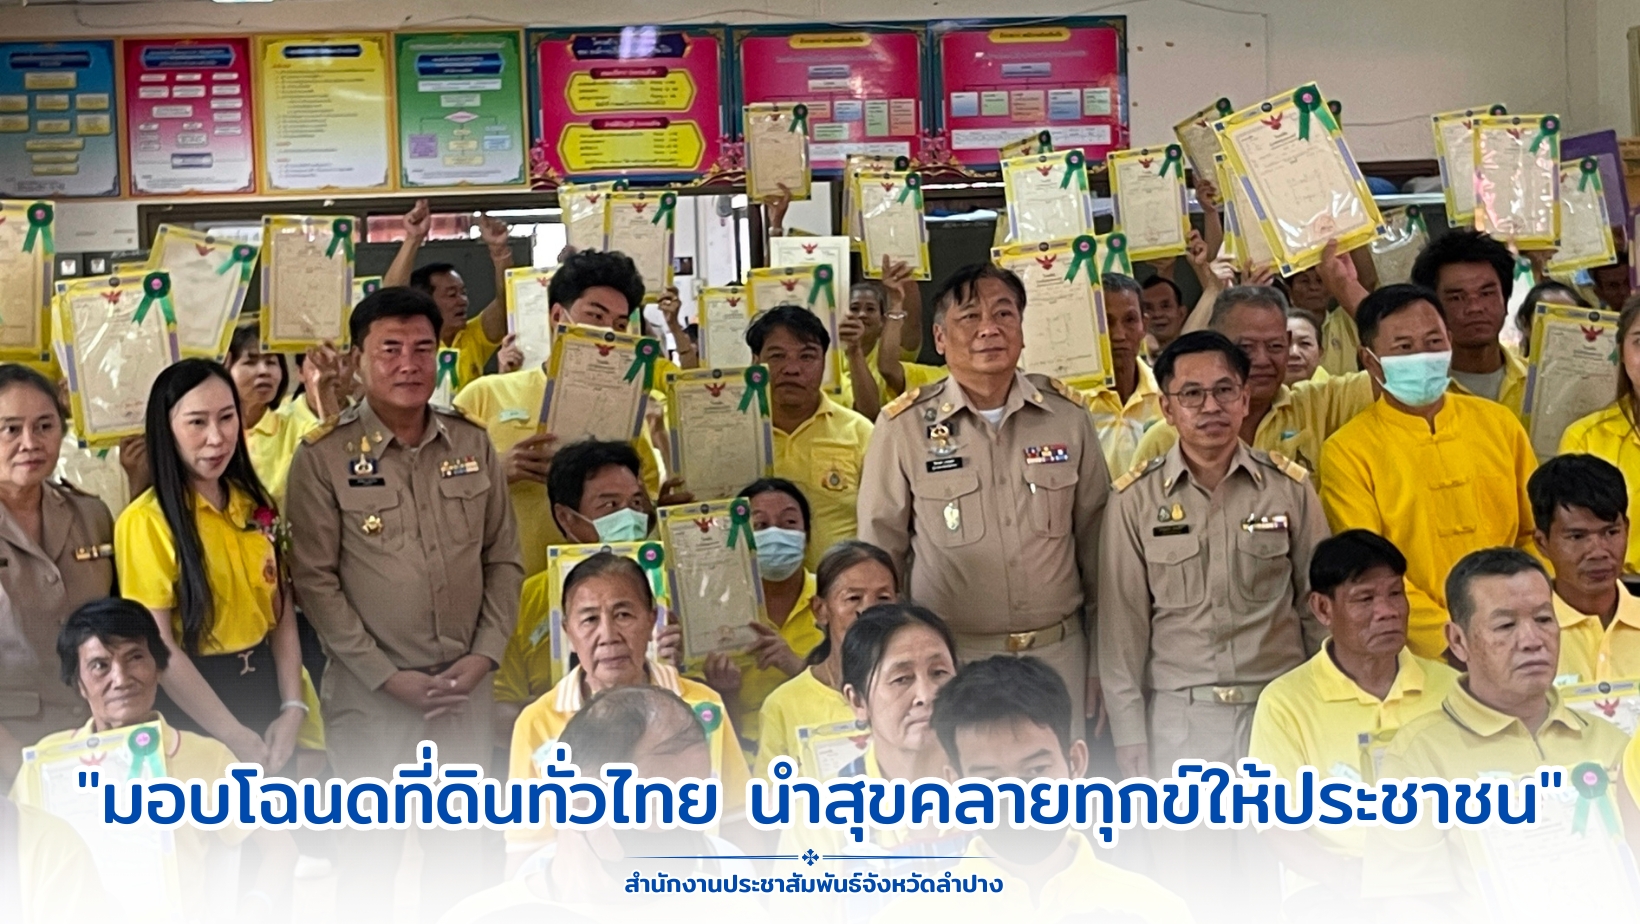 จ.ลำปาง จัดพิธีมอบโฉนดที่ดิน ตามโครงการ "มอบโฉนดที่ดินทั่วไทย นำสุขคลายทุกข์ให้ประชาชน"